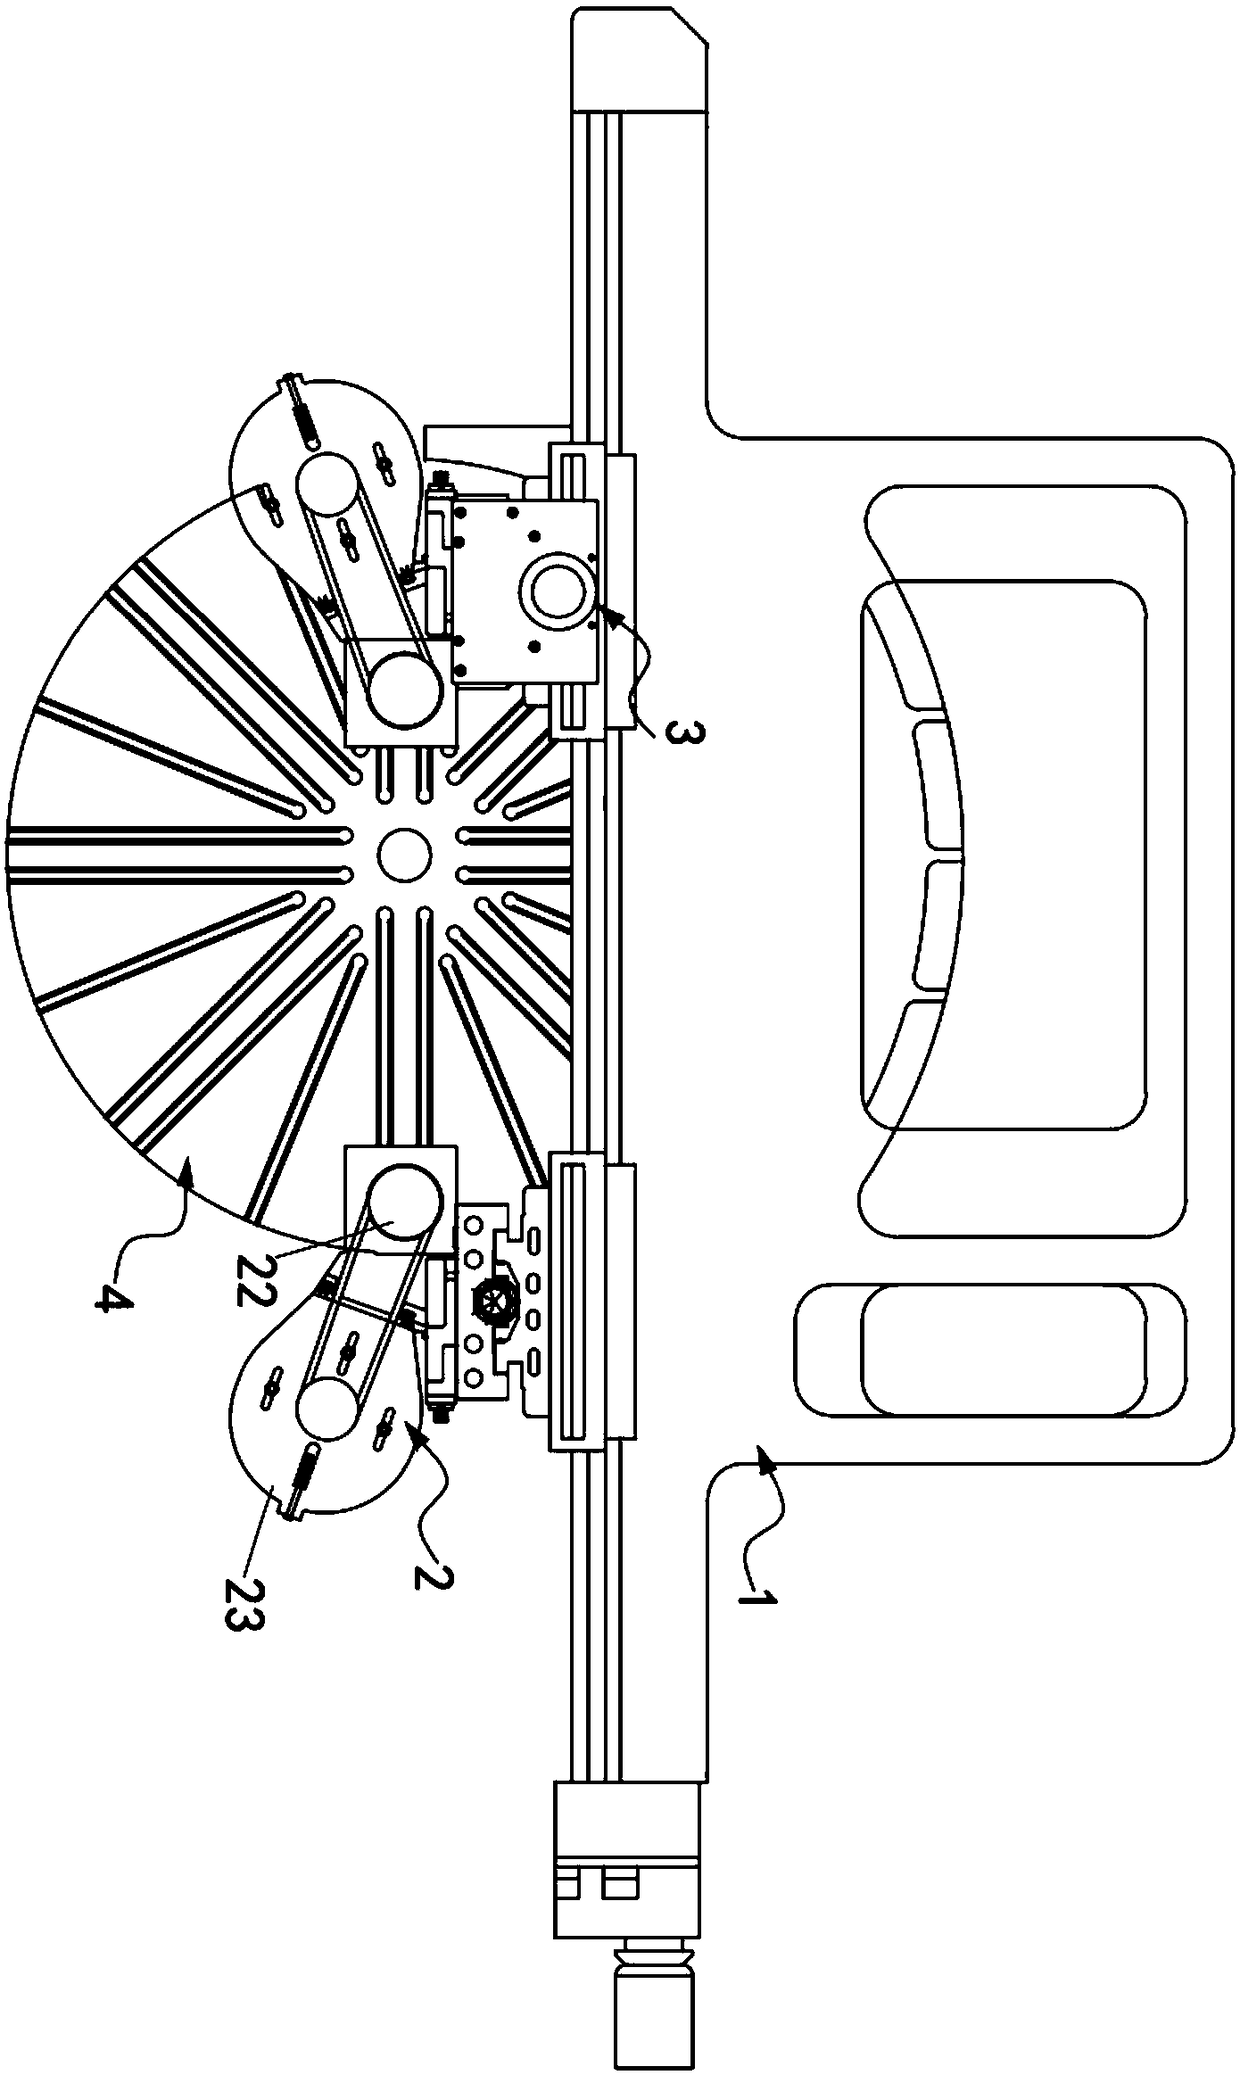 Super-large numerical control vertical mill machine